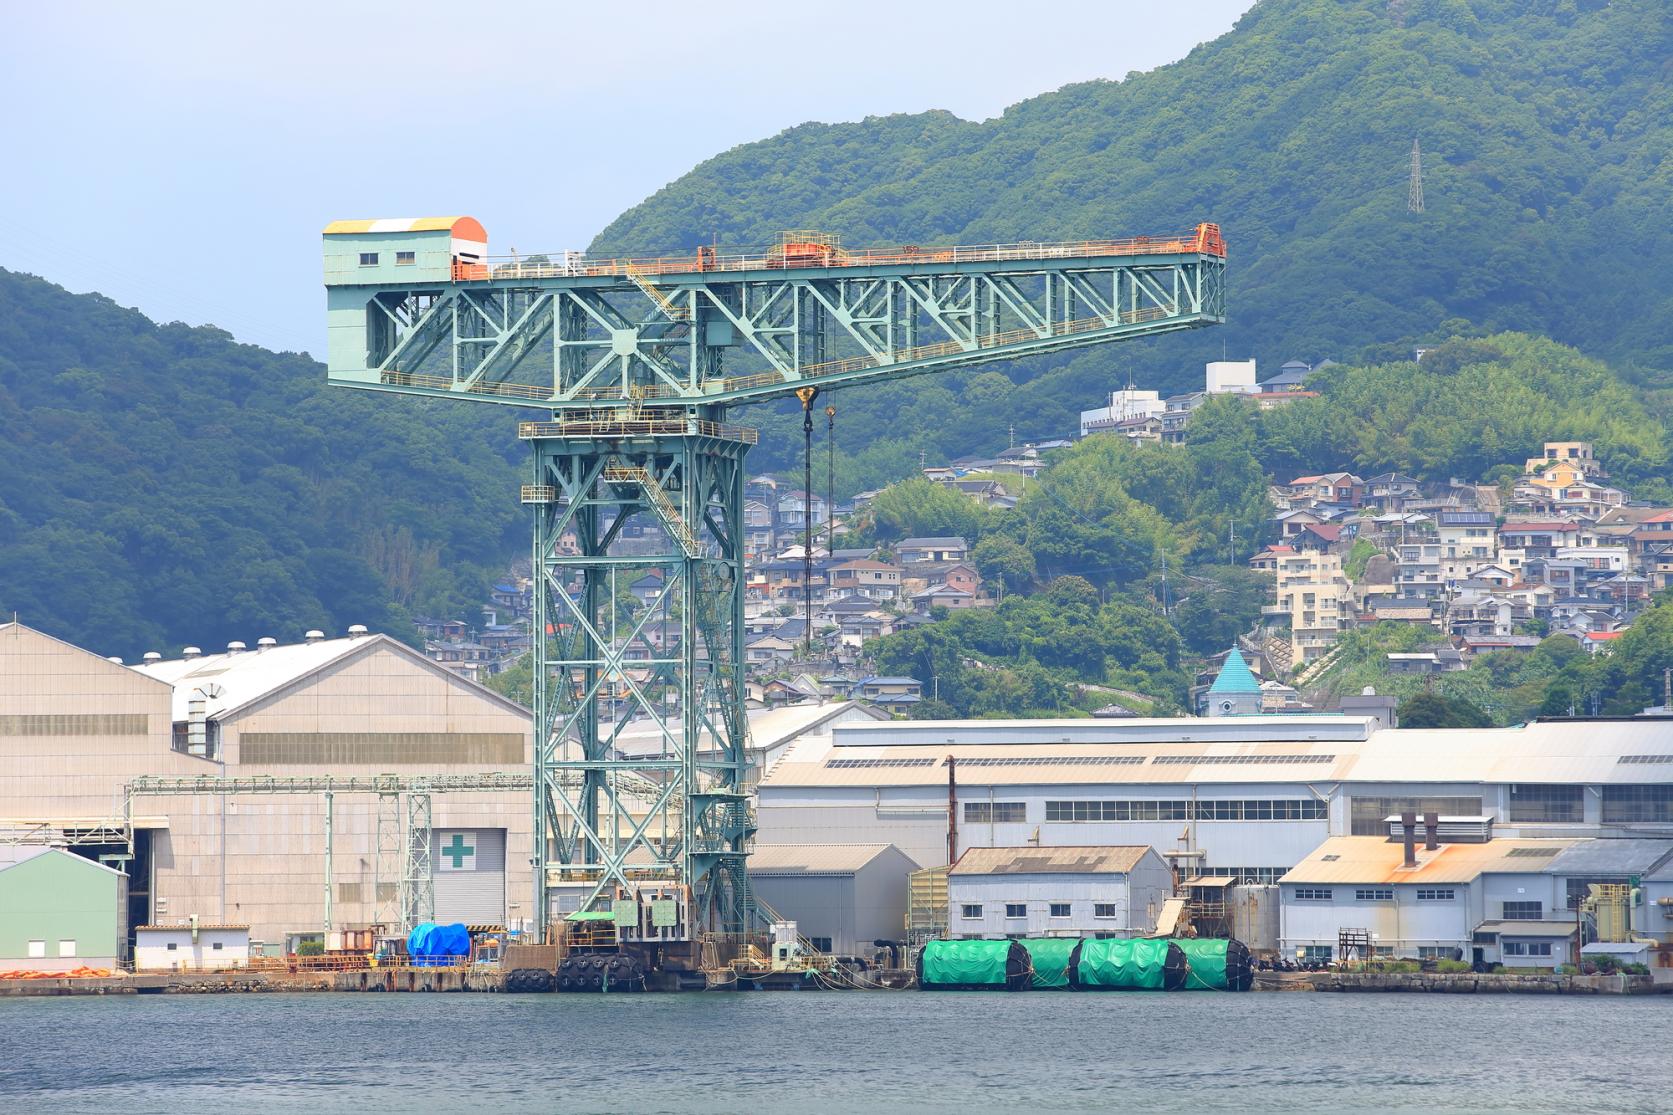 穿過女神大橋前往長崎灣 目標是軍艦島-1